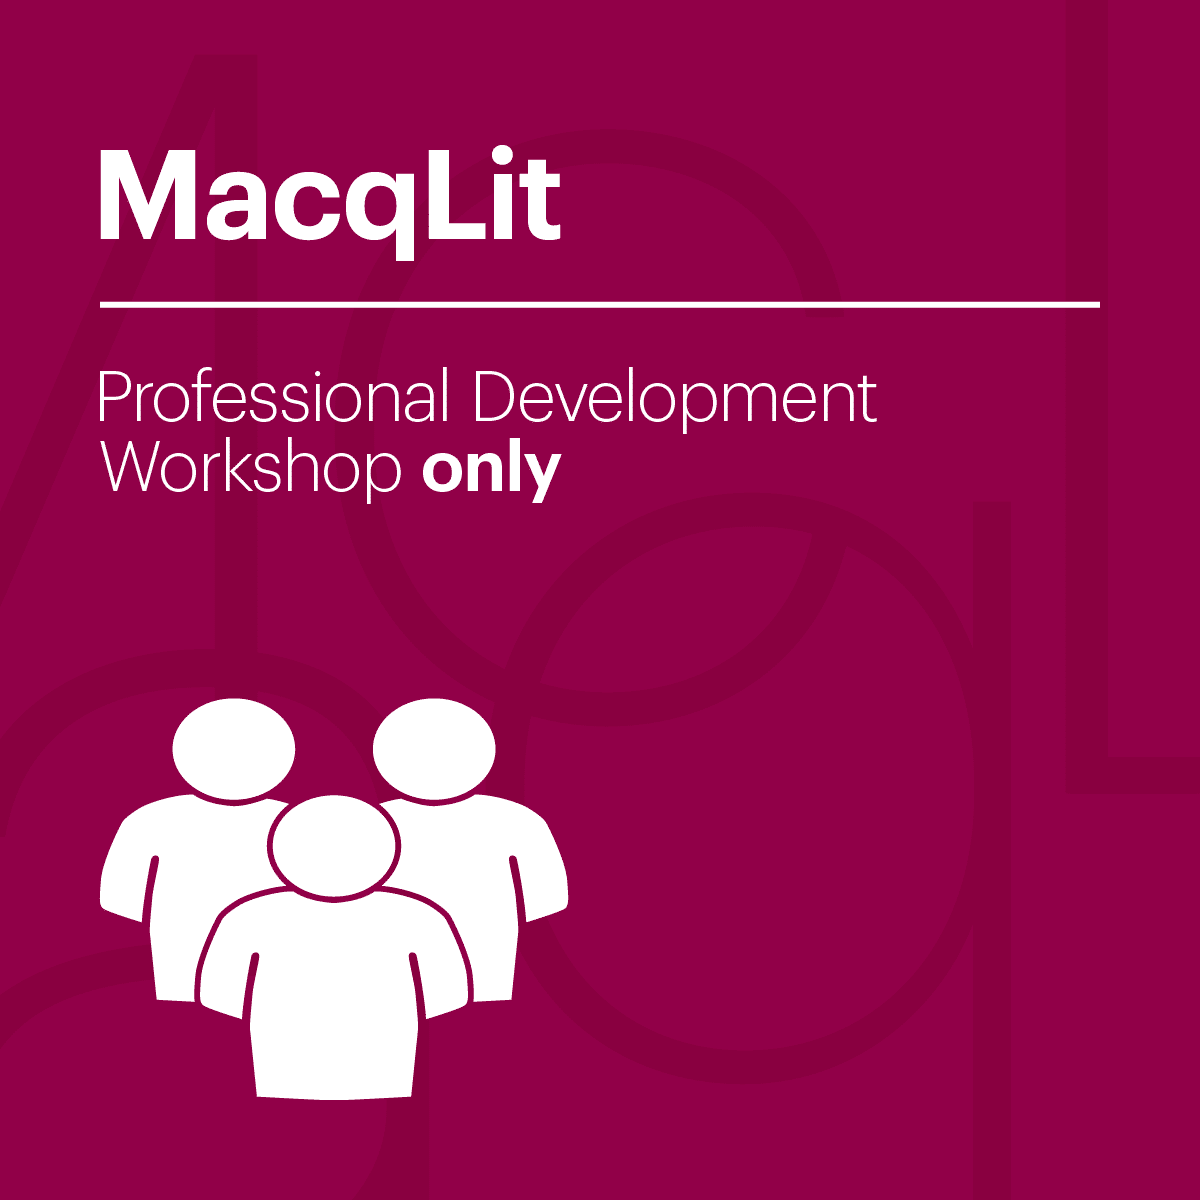 wmac-macqlit-professional-development-workshop-image01-01